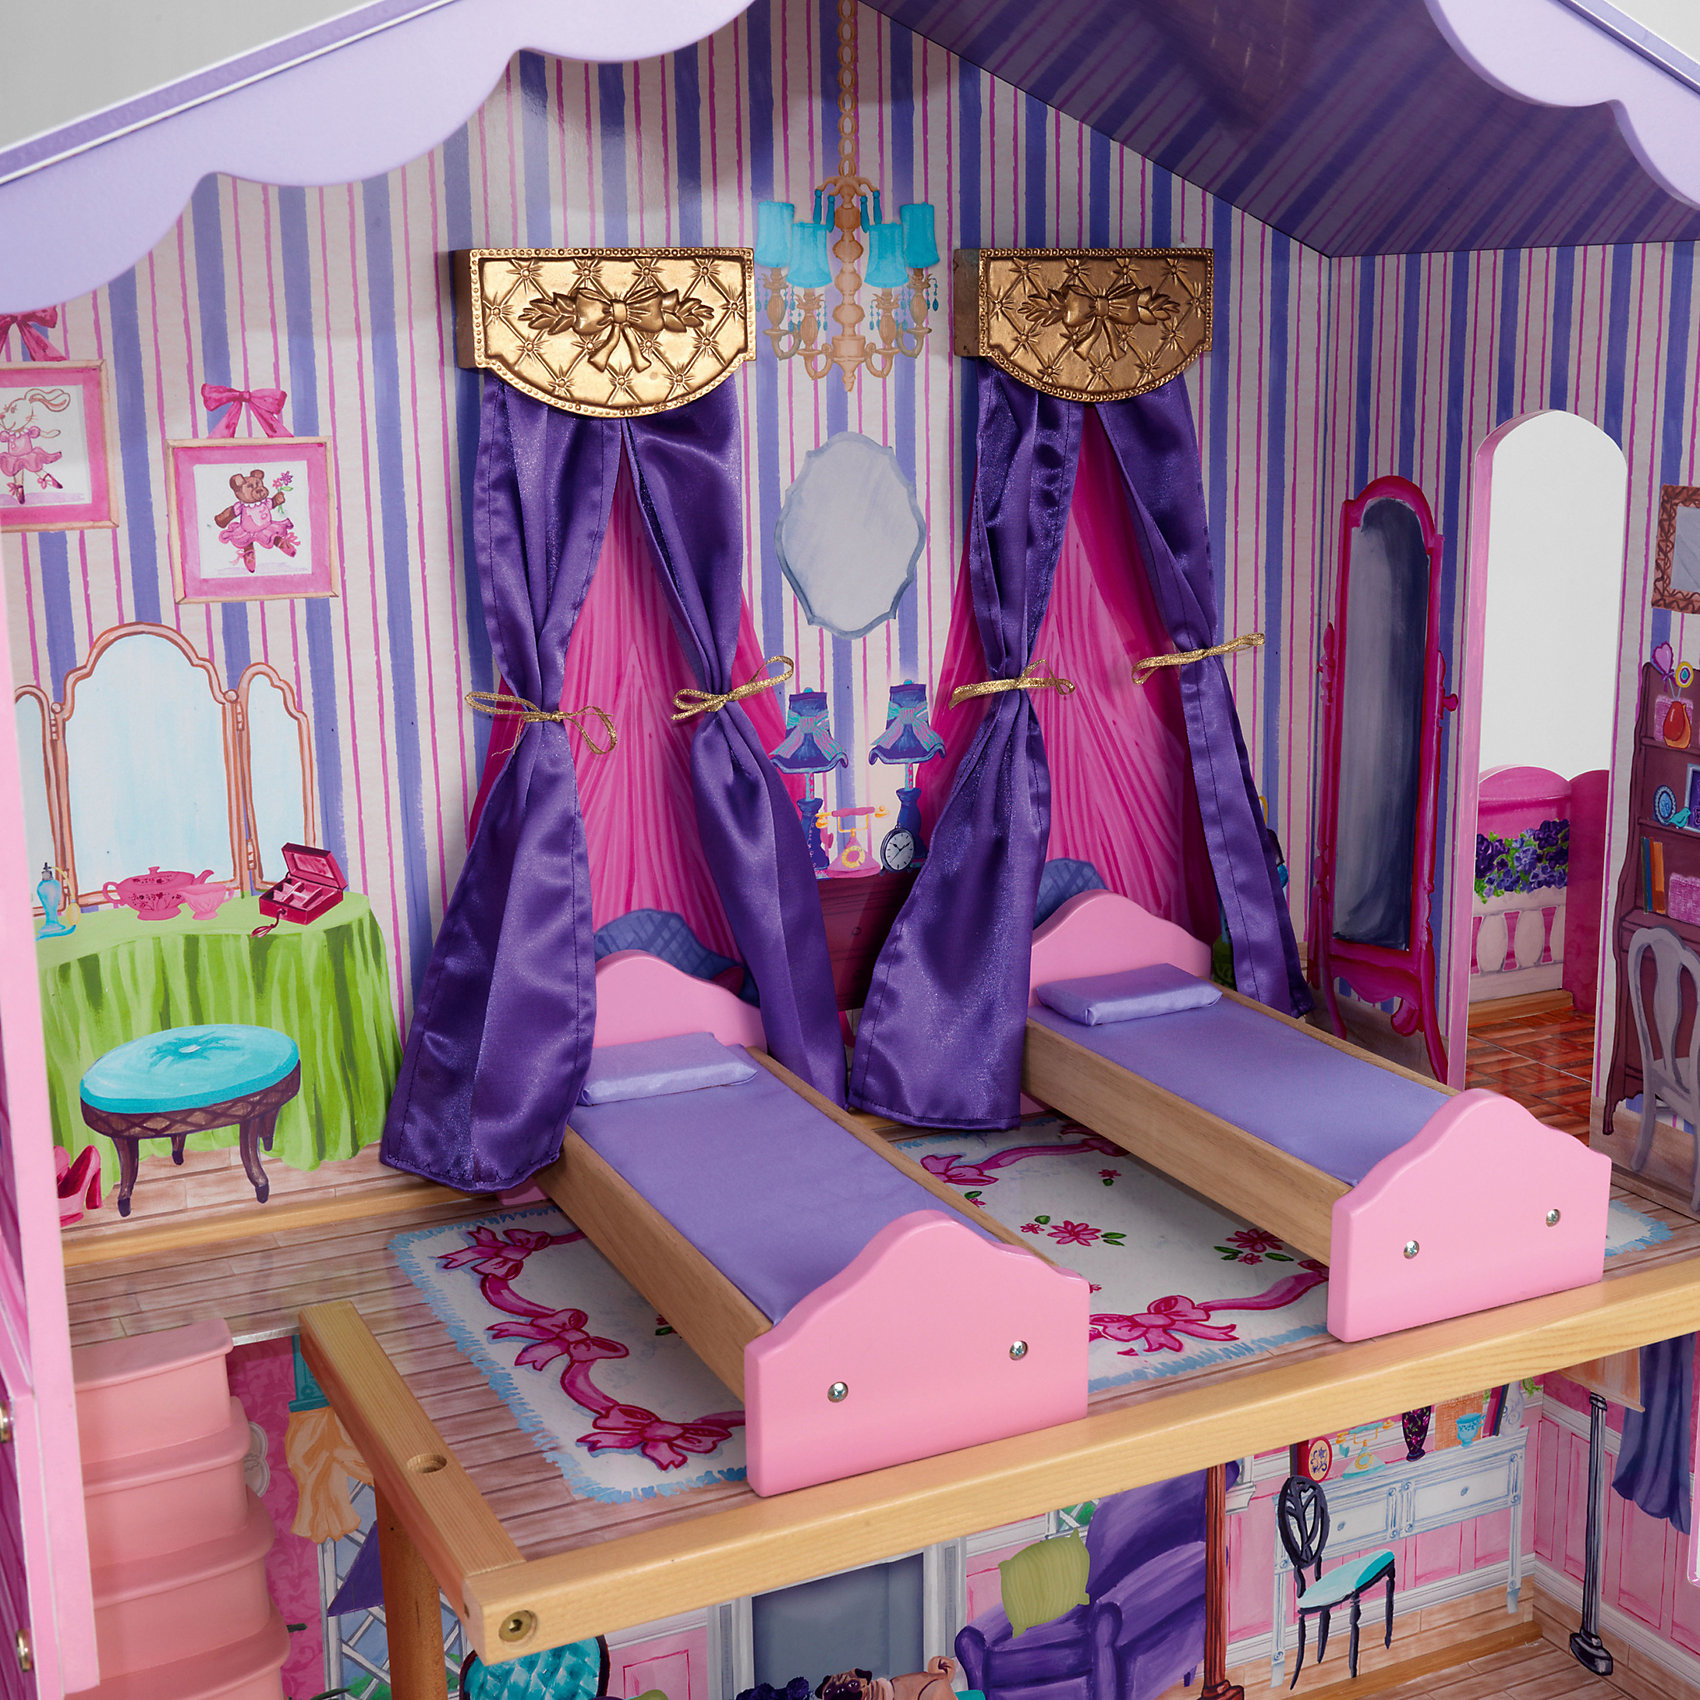 Кукольный дом Барби "Особняк мечты", с мебелью, 13 элементов KidKraft 1940230